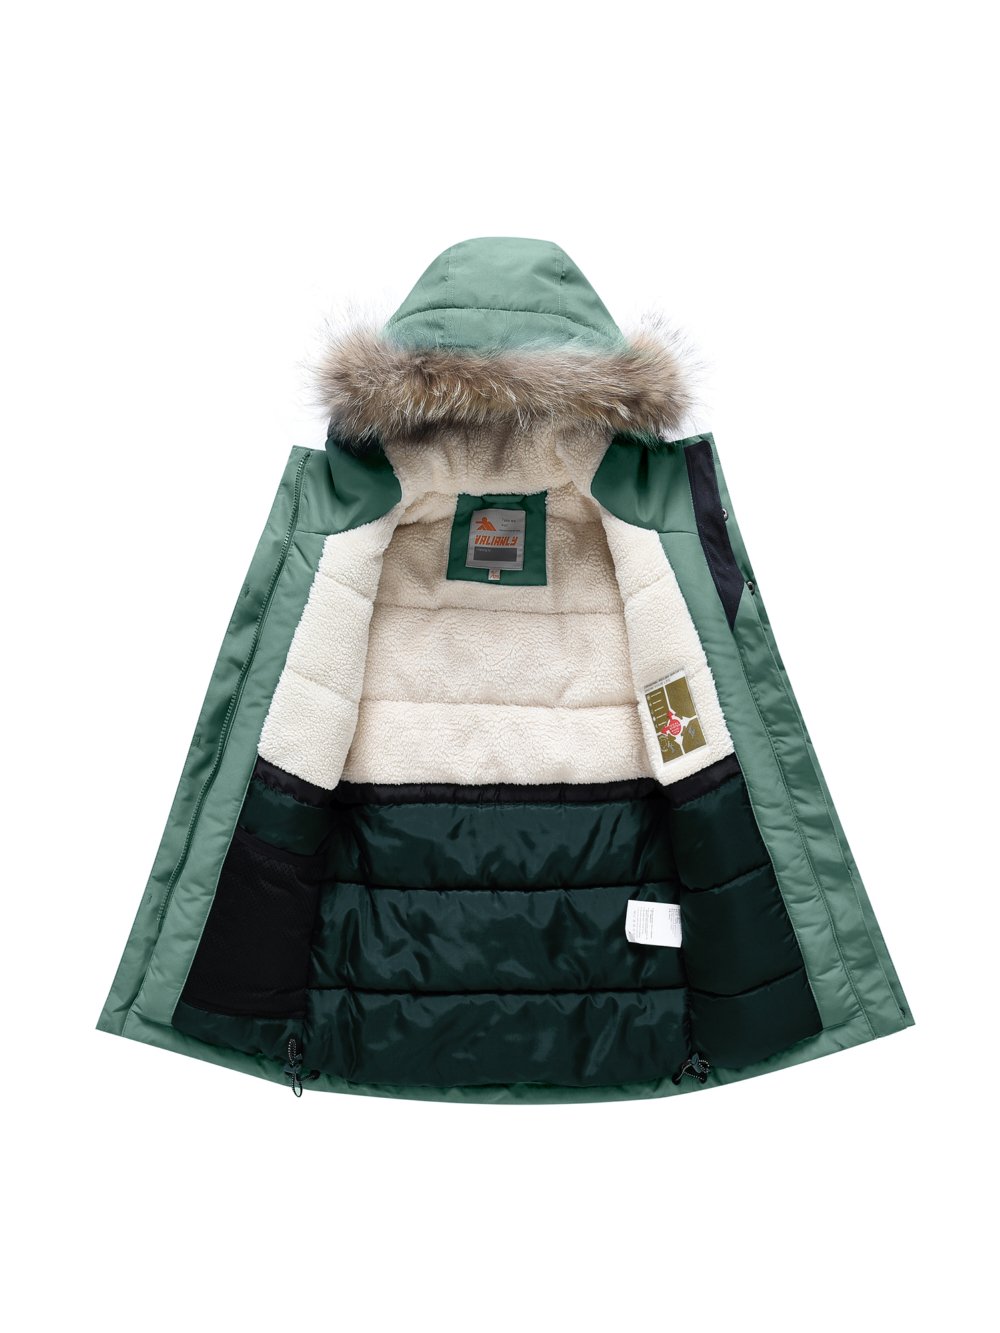 Купить куртку парку для мальчика оптом от производителя недорого в Москве 9339Z 1